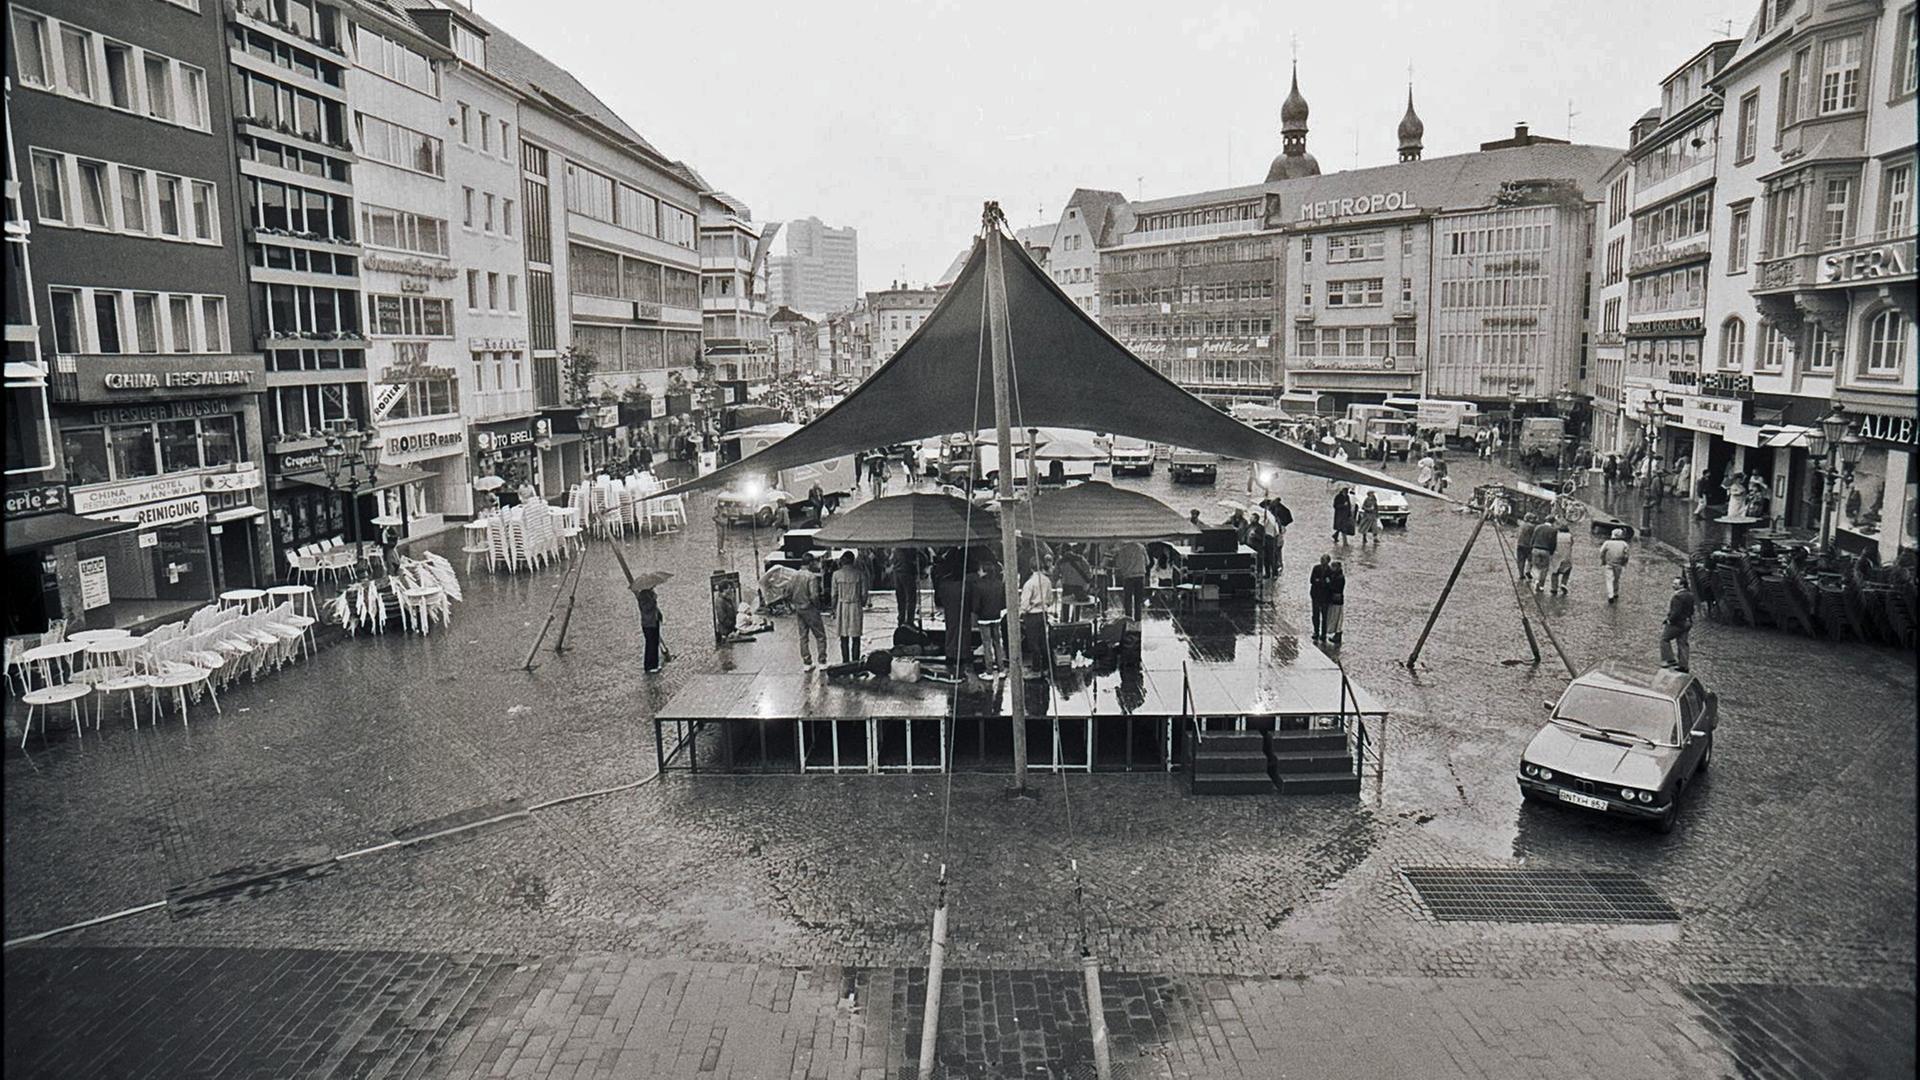 Eine Schwarzweißaufnahme von einem Markplatz in Bonn in der Wendezeit. Eine Bühne ist aufgebaut, wenige Menschen stehen davor. Sie halten Regenschirme, denn es regnet.